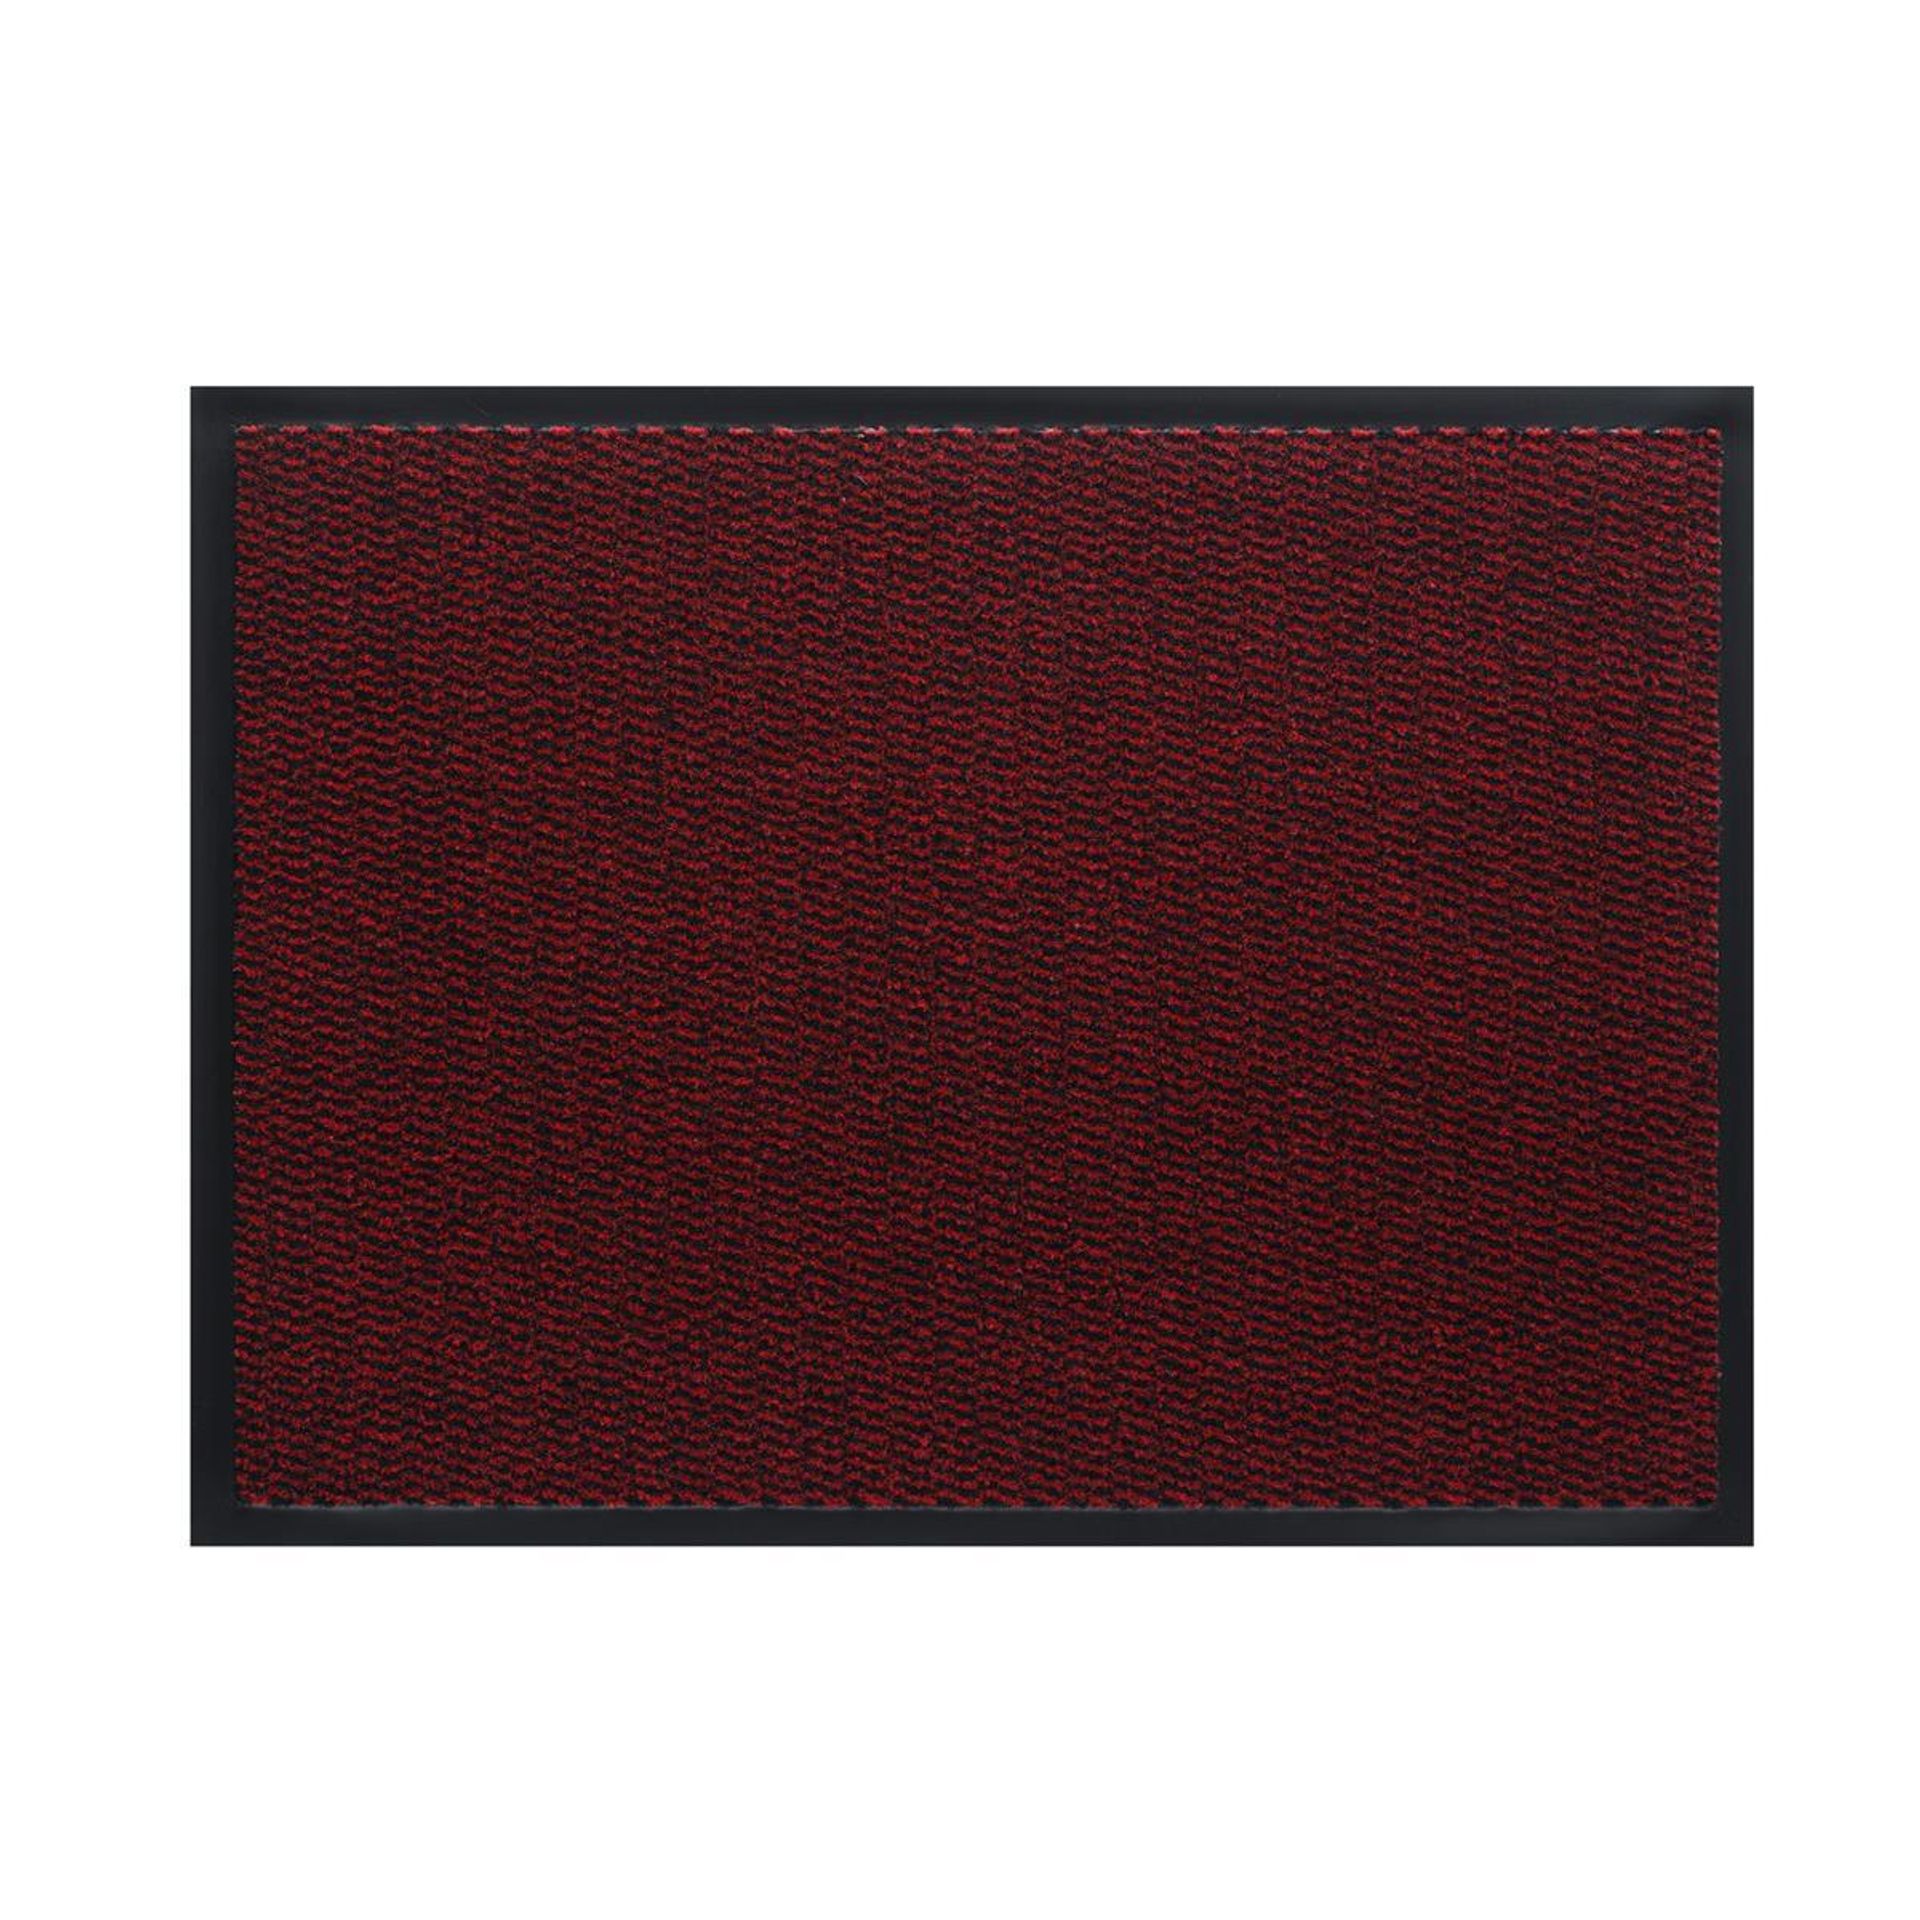 Sauberlauf Innen Spectrum 001 red - Rollenbreite 120 cm